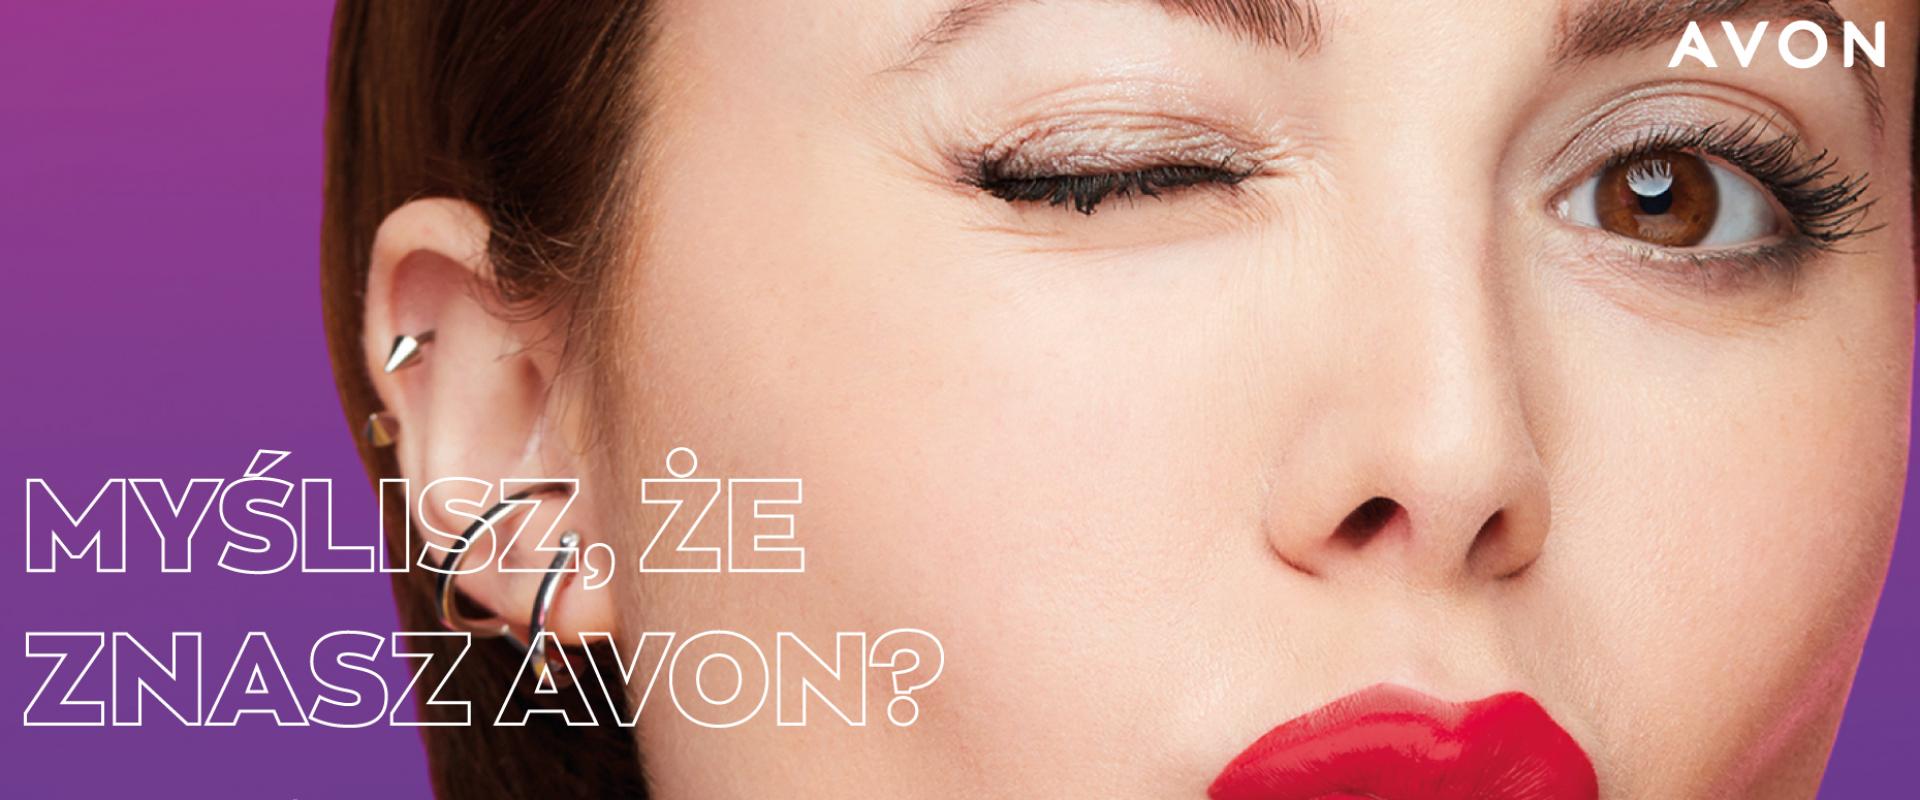 Watch Me Now - nowa kampania Avon promuje firmę i przedsiębiorczość współpracujących z nią kobiet